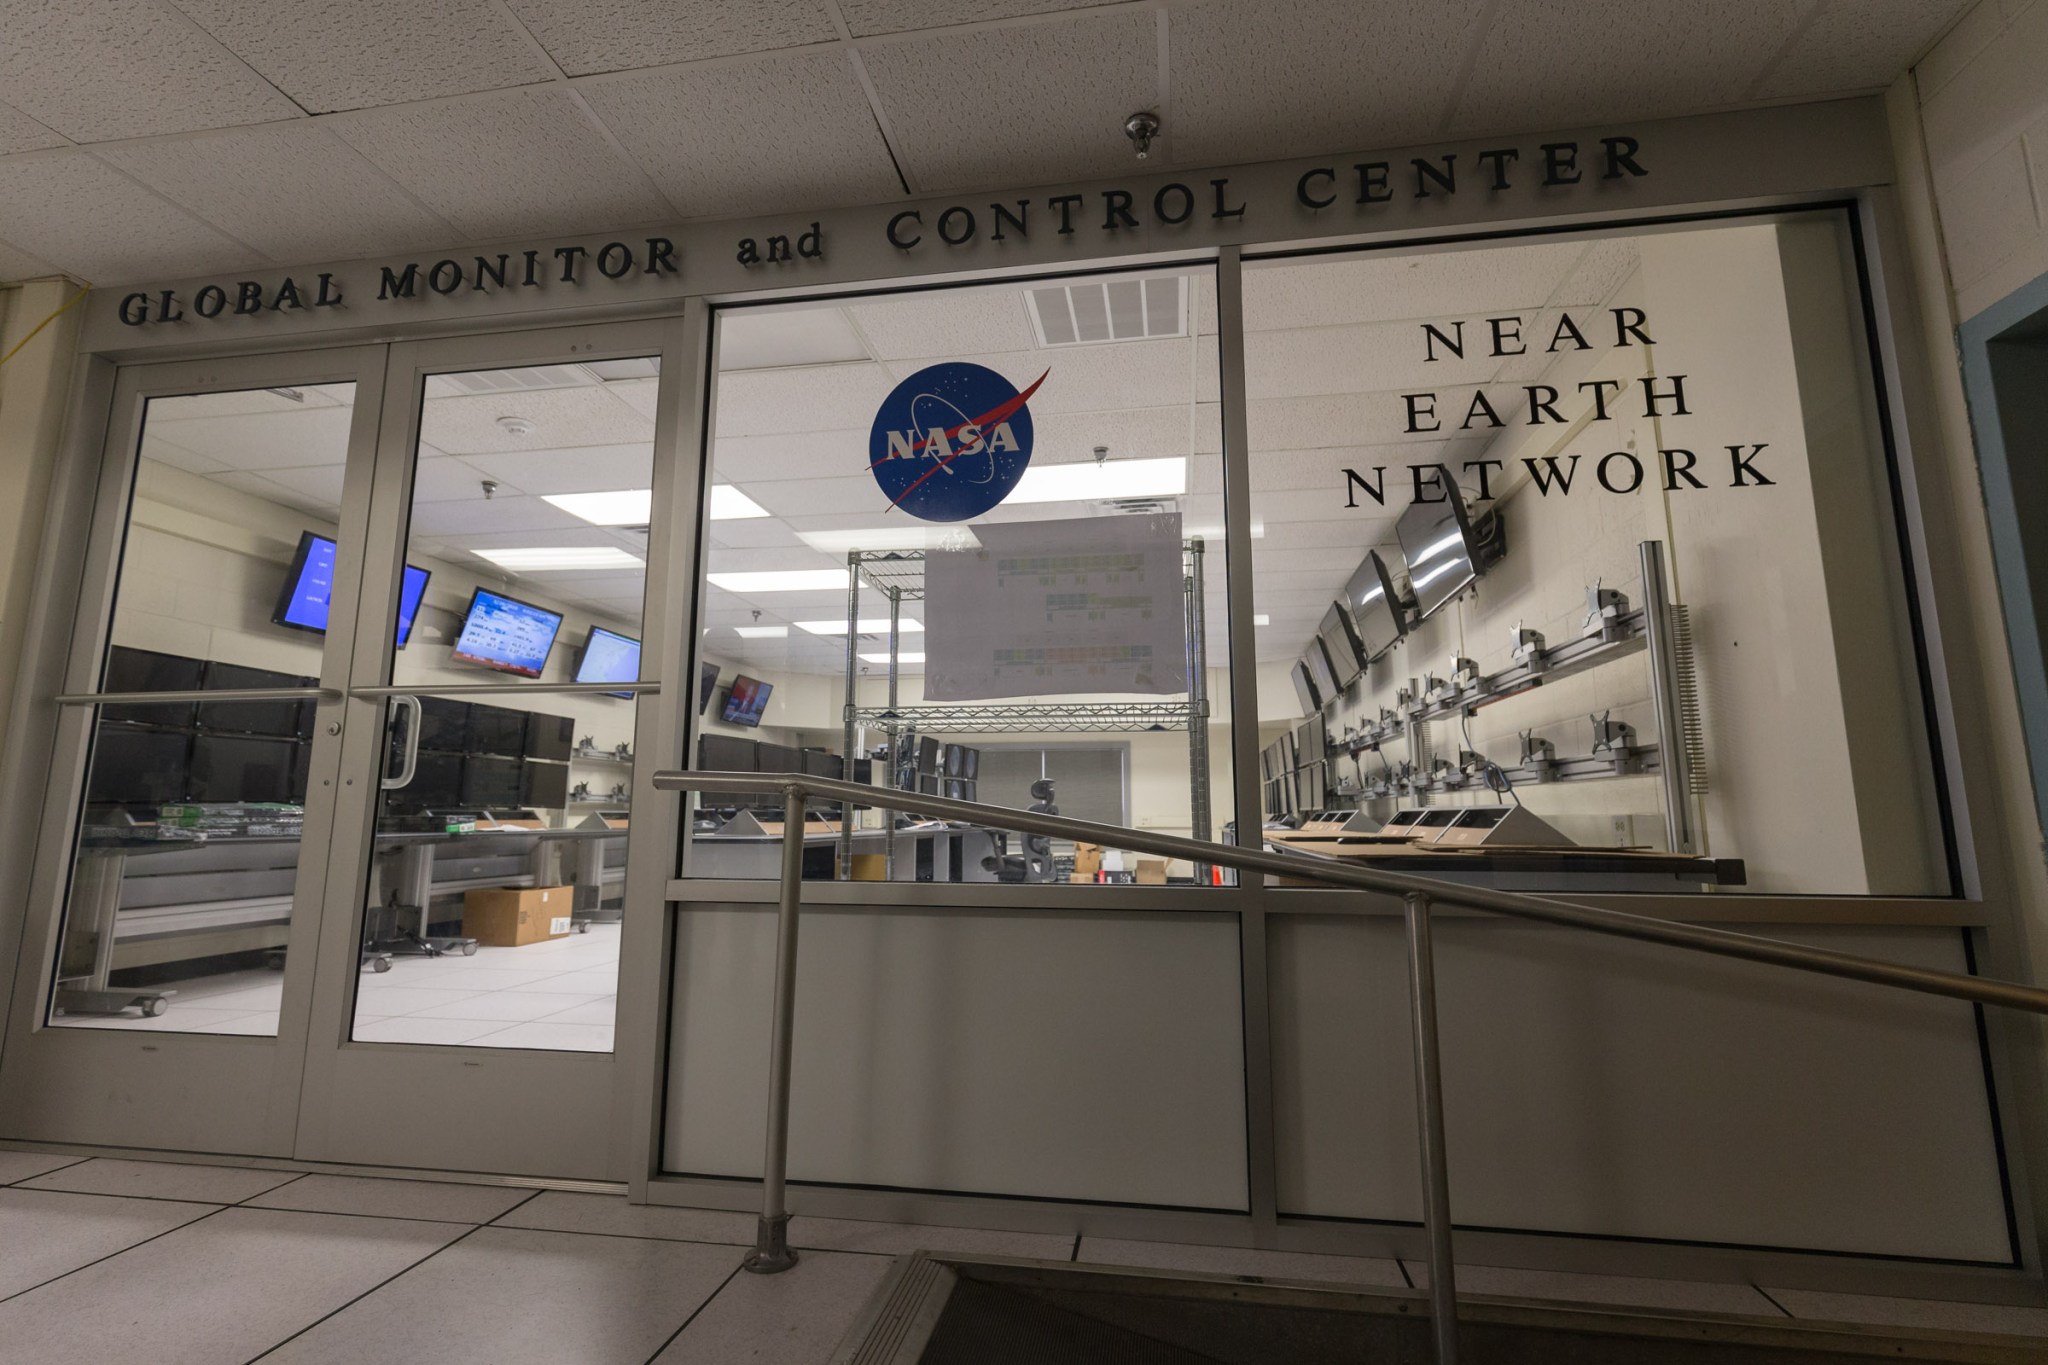 NASA’s Global Monitor and Control Center at Wallops Flight Facility